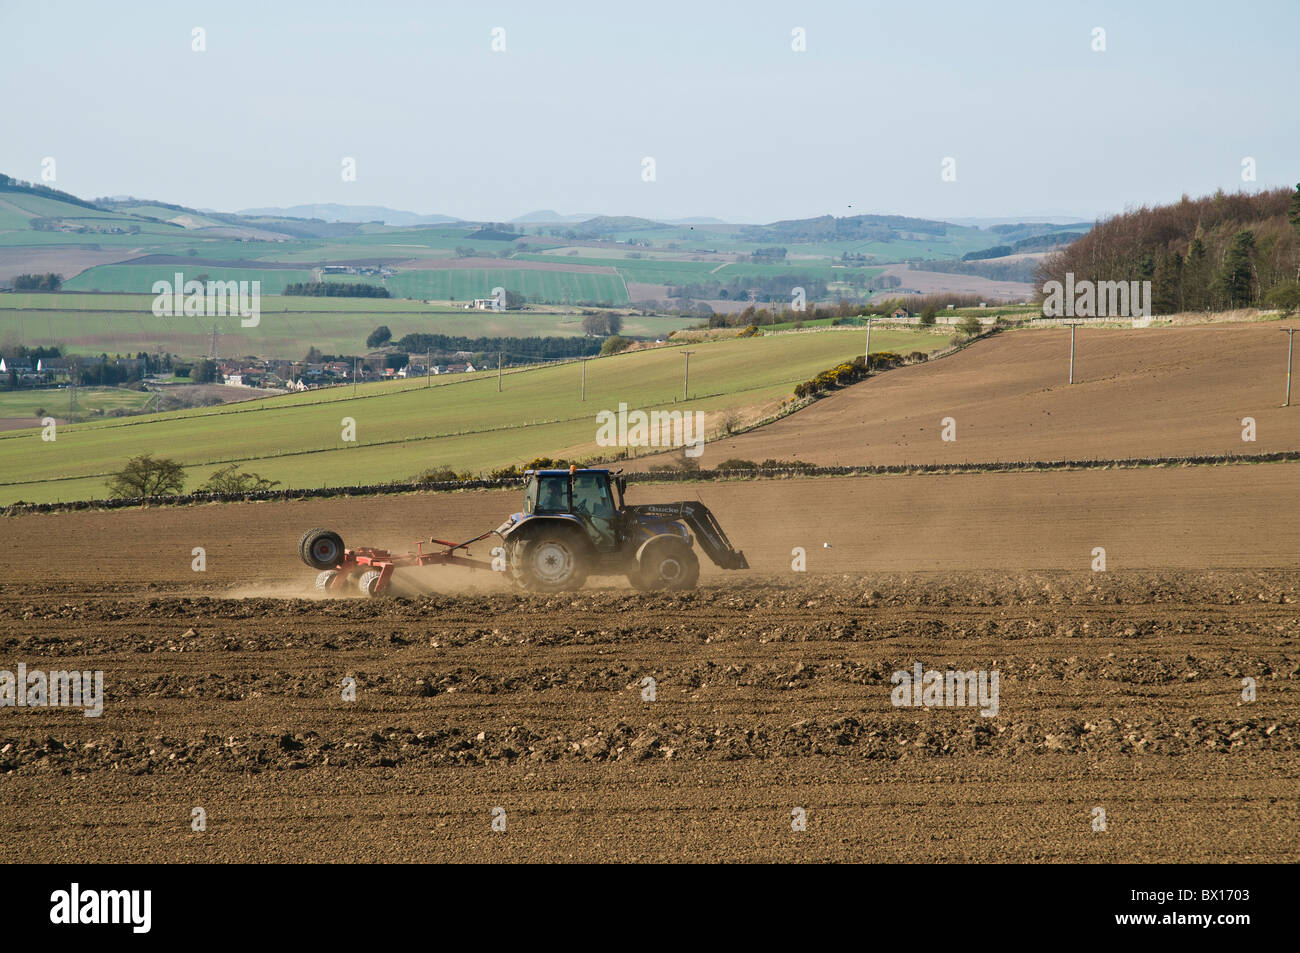 dh AGRICULTURA FIFE Tractor escocés Raqueo campo arado valle escocia labranza máquina Foto de stock